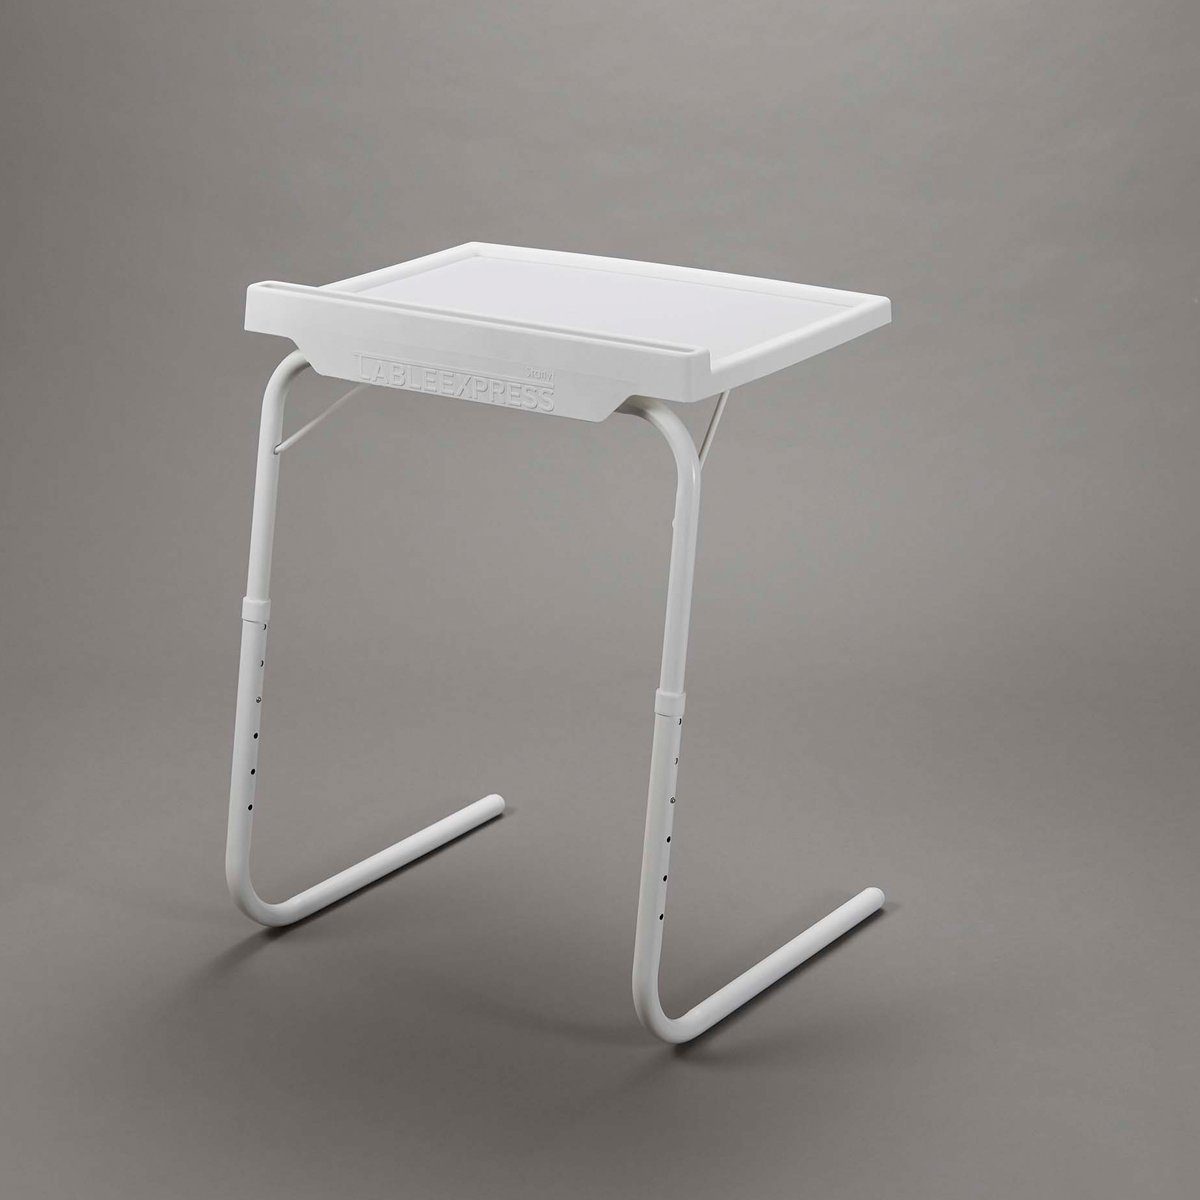 Express Doppel-L-Design, zusammenklappbar Positionen, Weiß (1 mögliche Table Starlyf Beistelltisch Tisch), 18